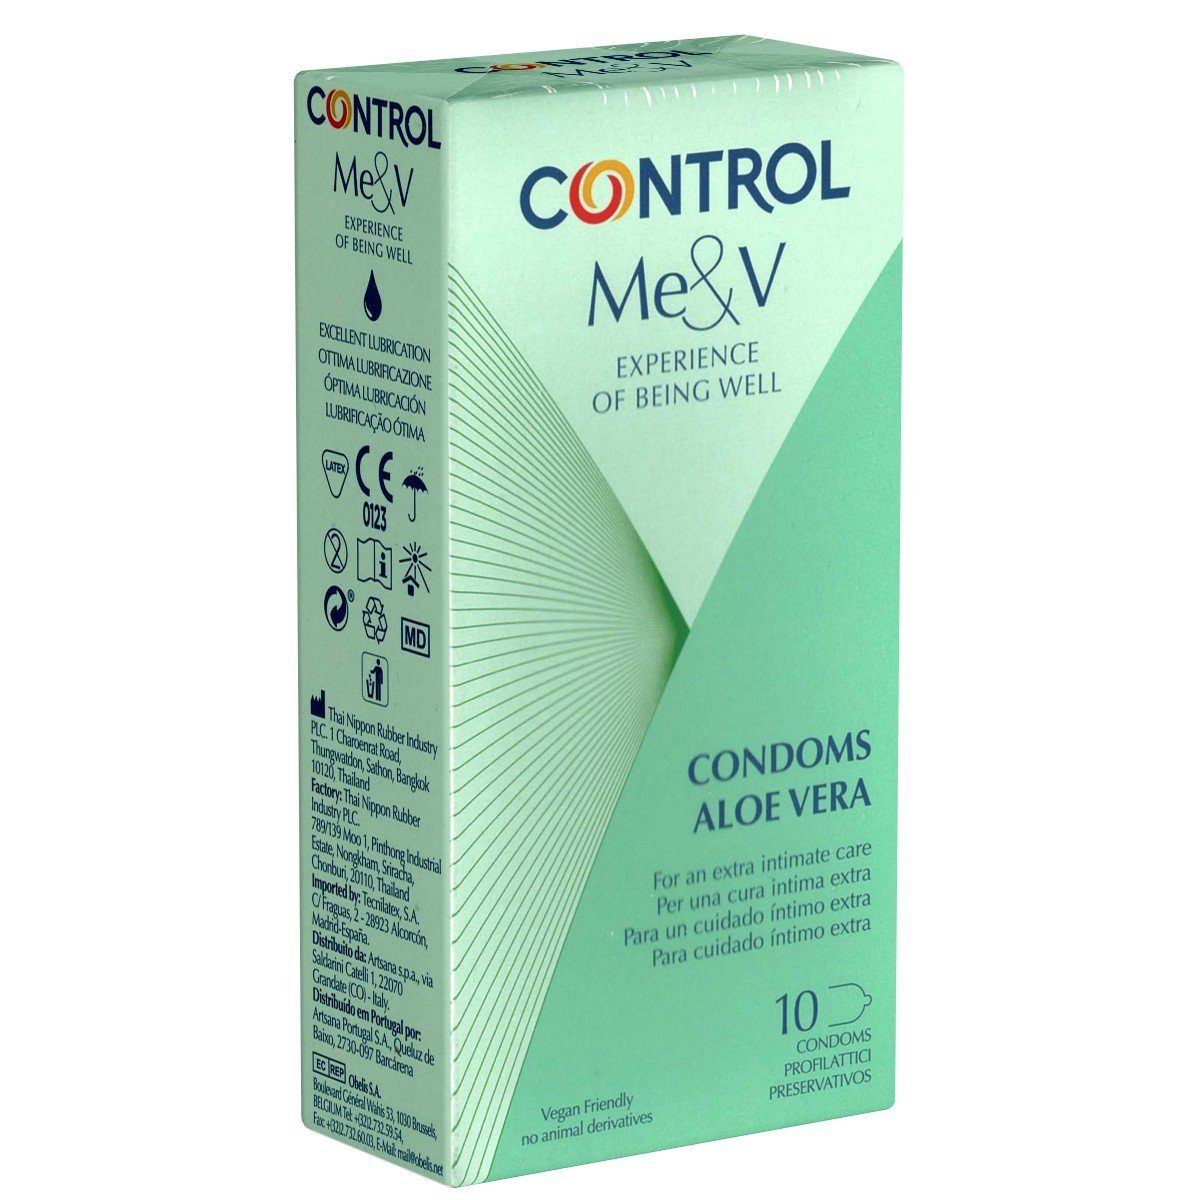 CONTROL CONDOMS Kondome Aloe Vera Packung mit, 10 St., stark befeuchtende Kondome mit pflegendem Aloe-Vera-Extrakt, spanische Kondome für besonders feuchtes Vergnügen